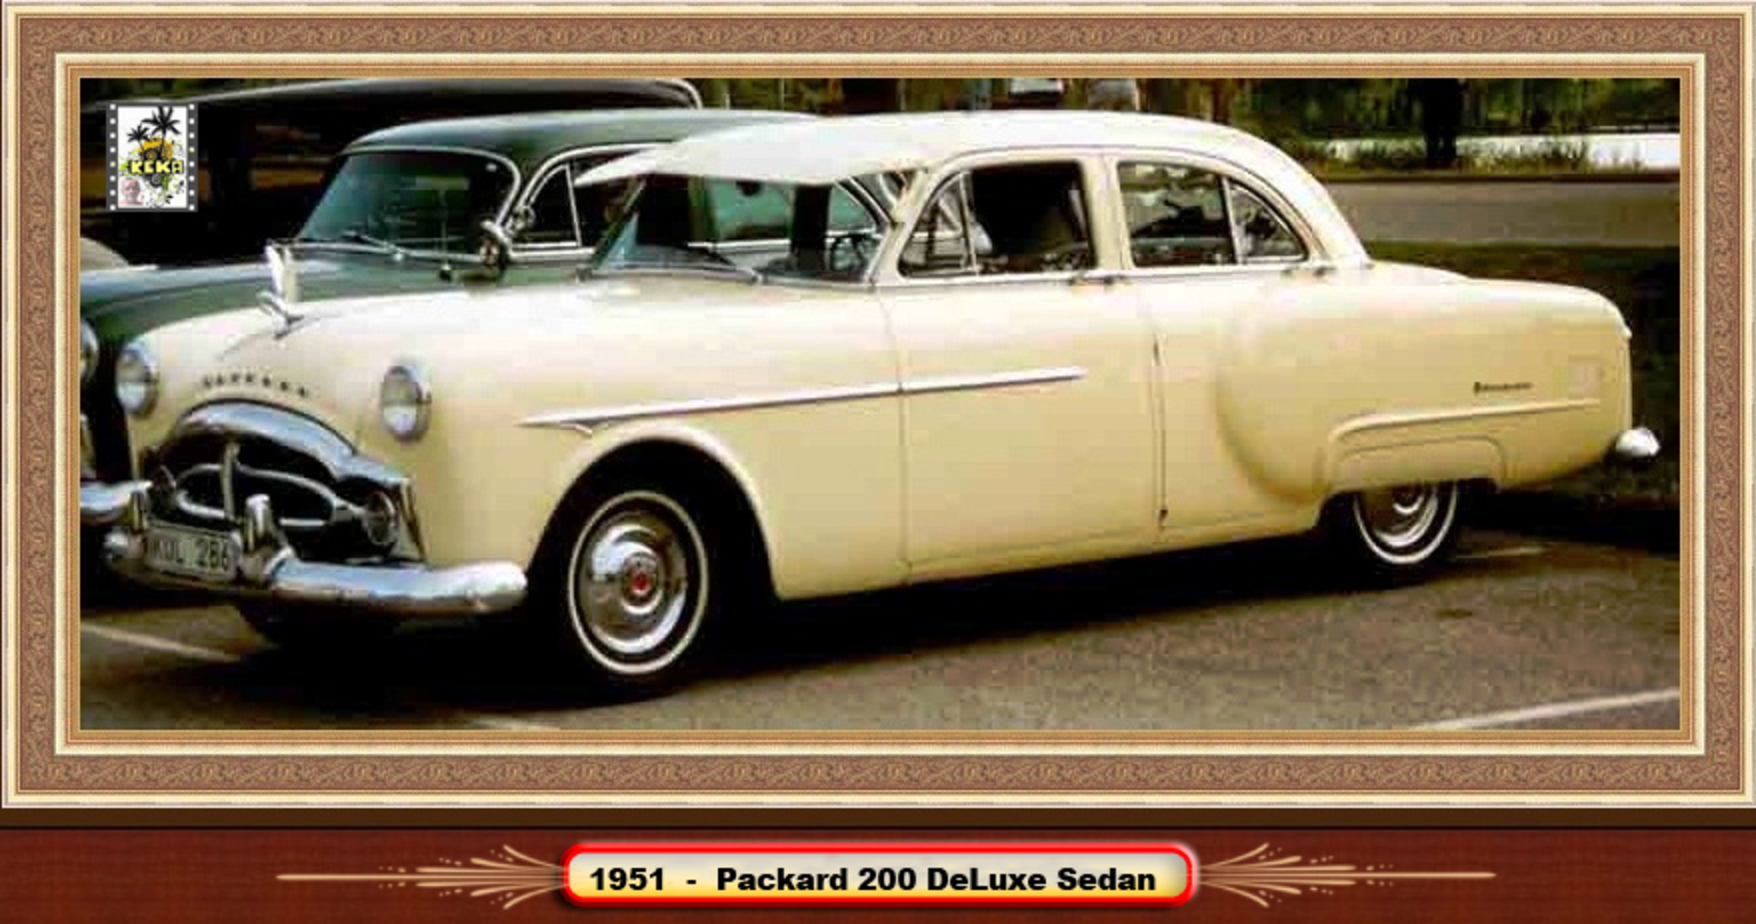 1951 - Packard 200 DeLuxe 4door Sedan | Flickr - Photo Sharing!